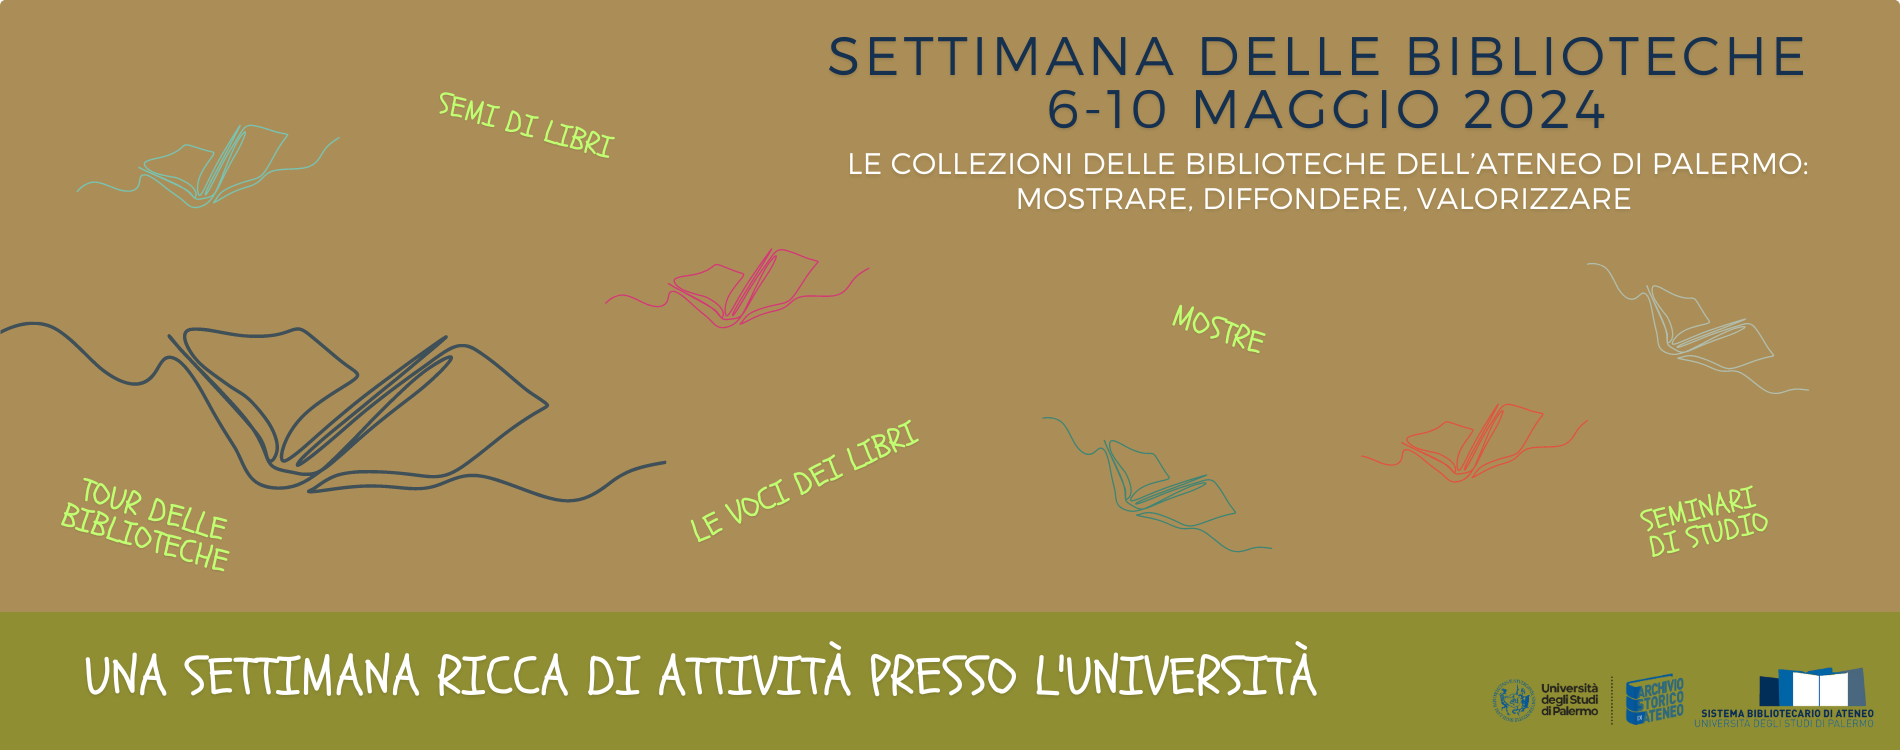 La settimana delle biblioteche all’Università di Palermo - Da lunedì 6 a venerdì 10 maggio